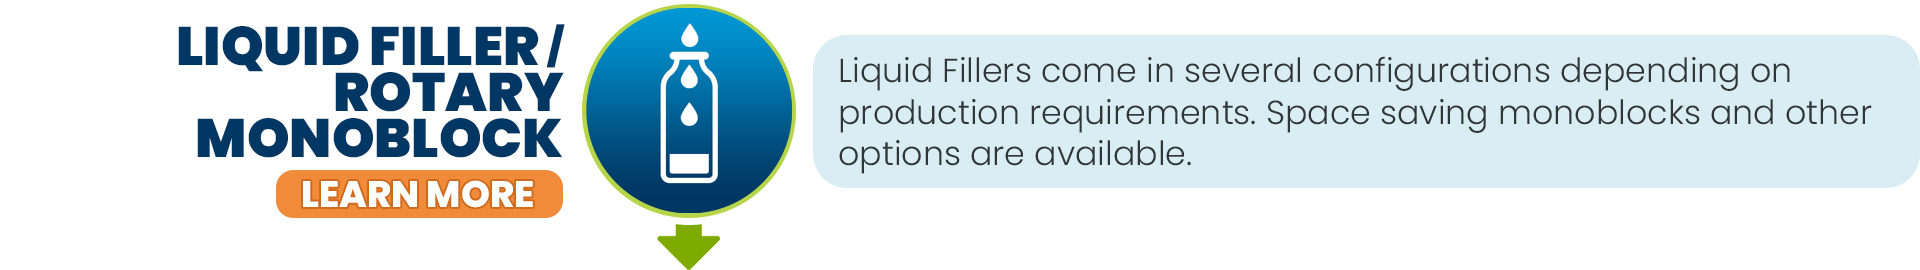 Liquid Filler - Block Liquid